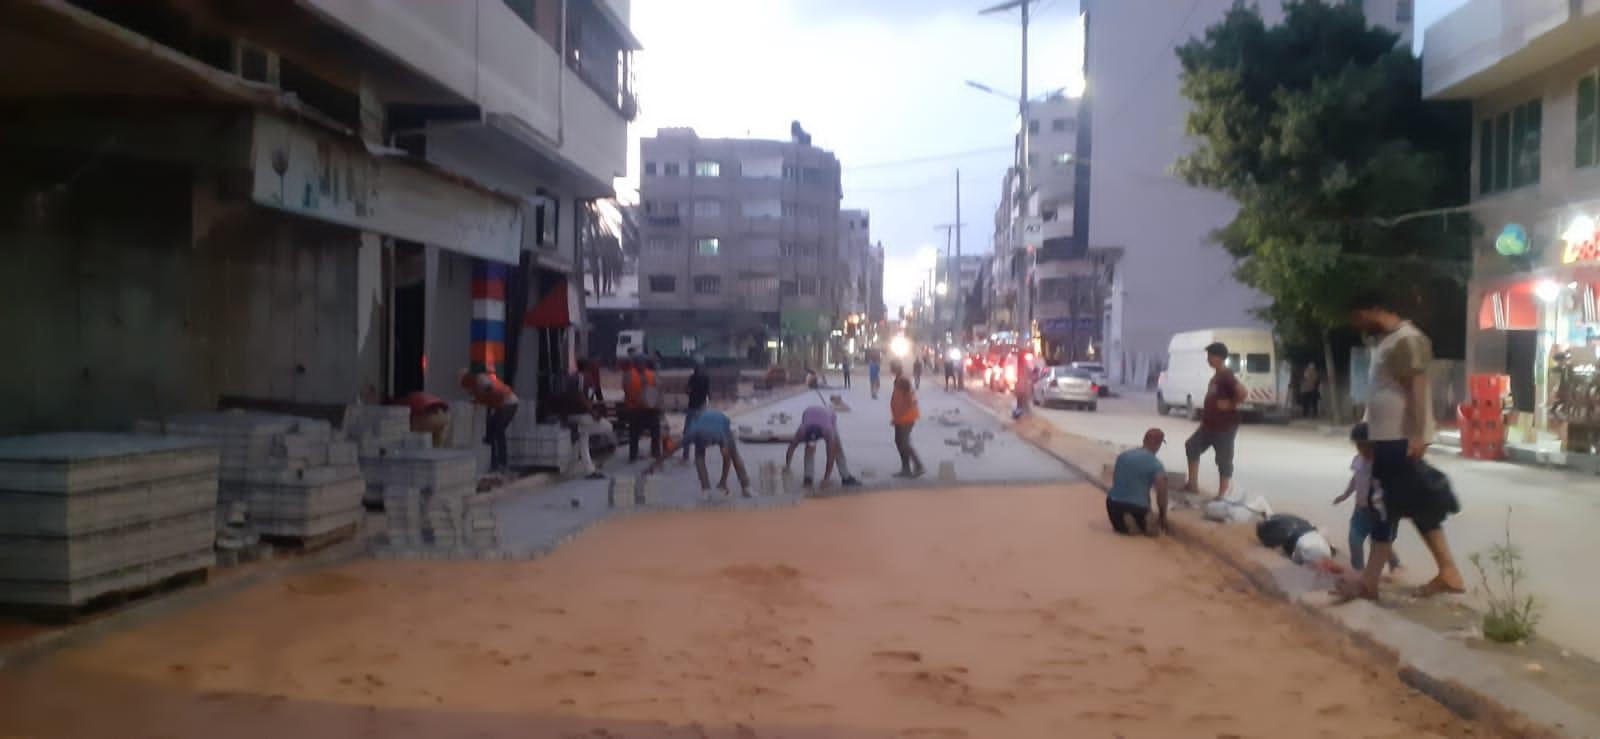 بلدية غزة تبدأ بإجراء صيانة مؤقتة للشوارع الرئيسية المتضررة من العدوان الأخير